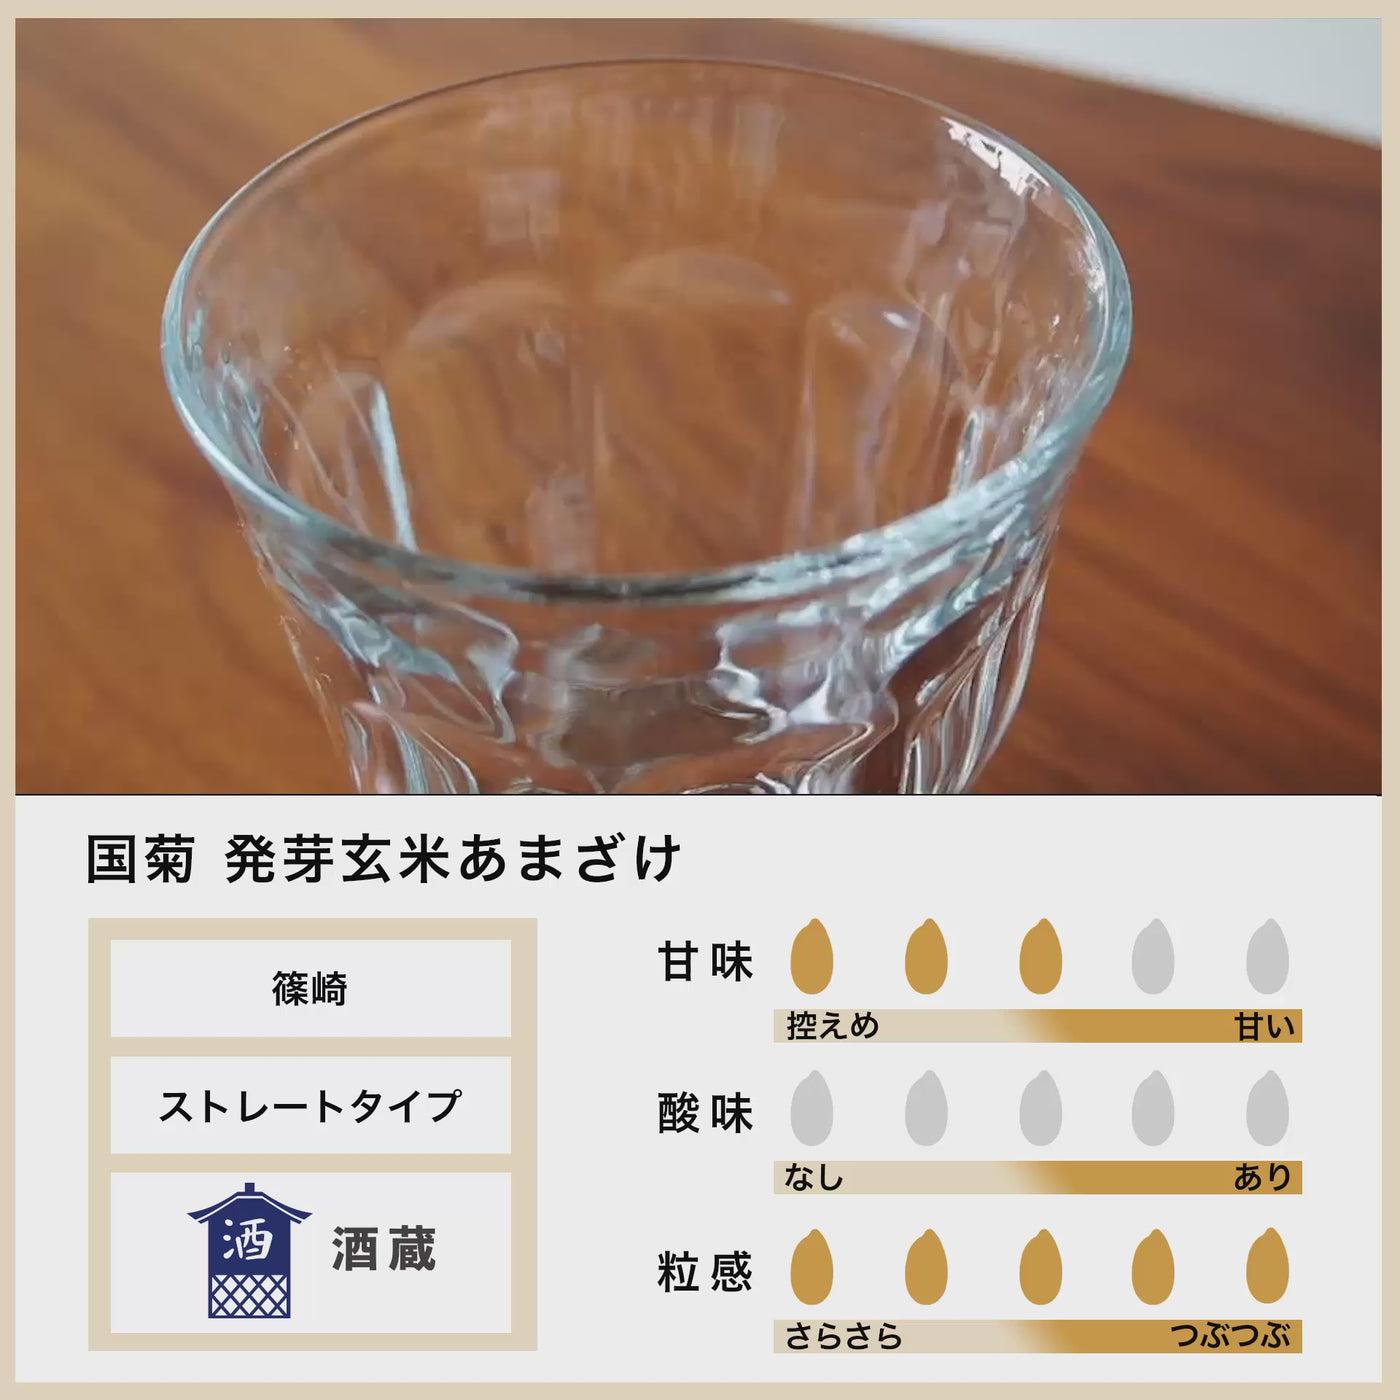 [Bulk purchase] Shinozaki Kunigiku sprouted brown rice Amazake 985g 6 bottles/Amazake